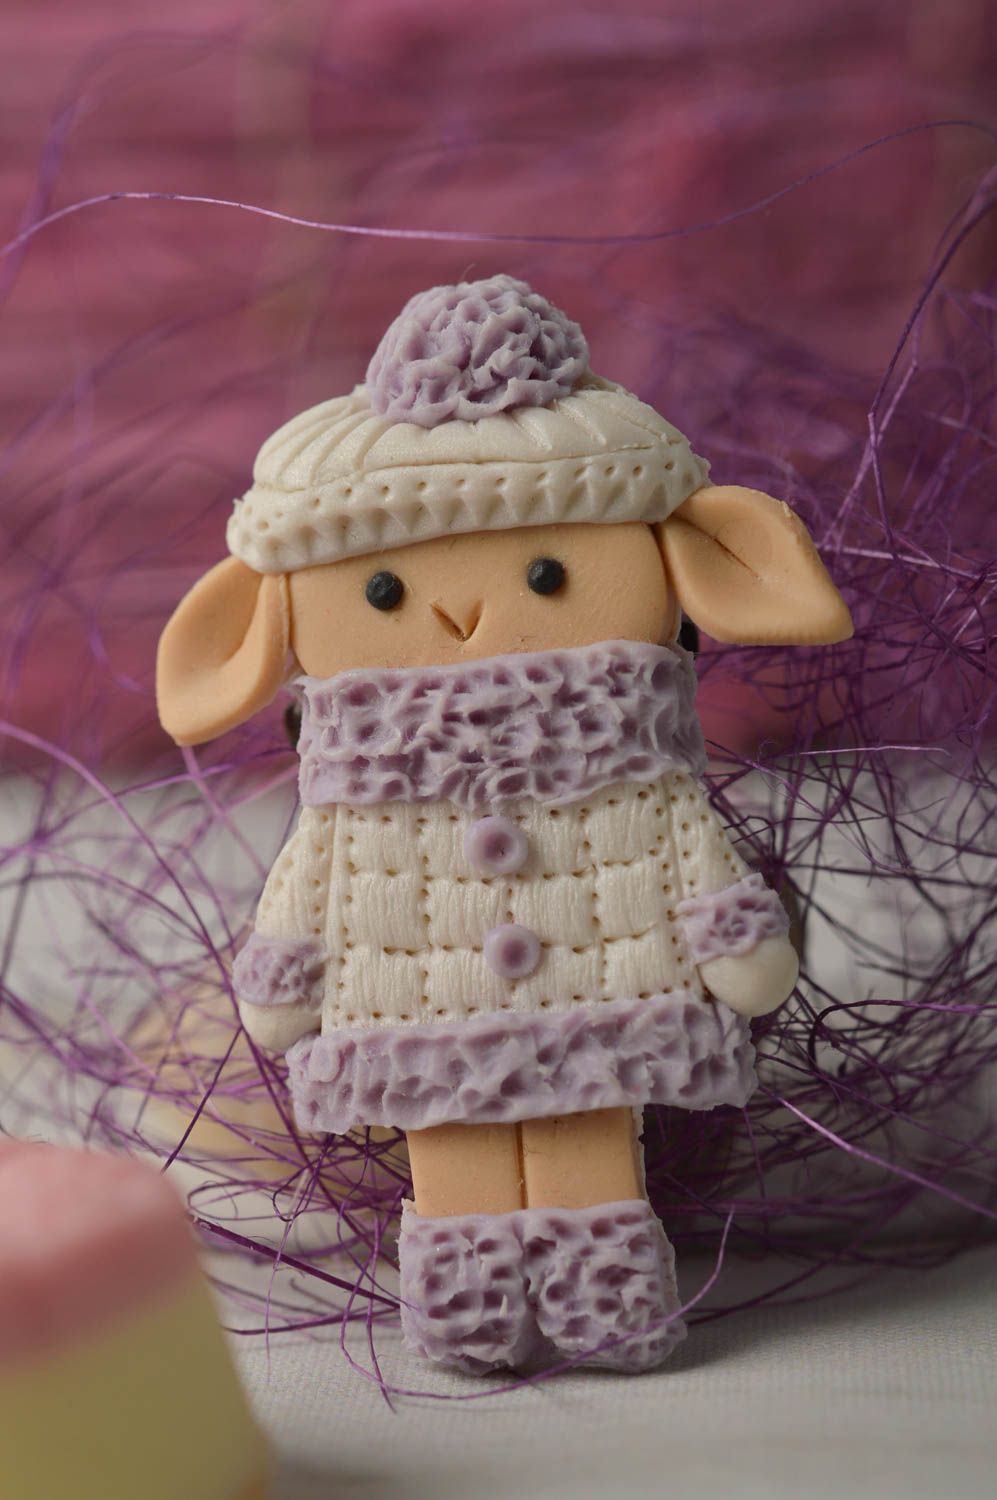 Broche hecho a mano en forma de ovejita regalo personalizado accesorio de moda foto 2